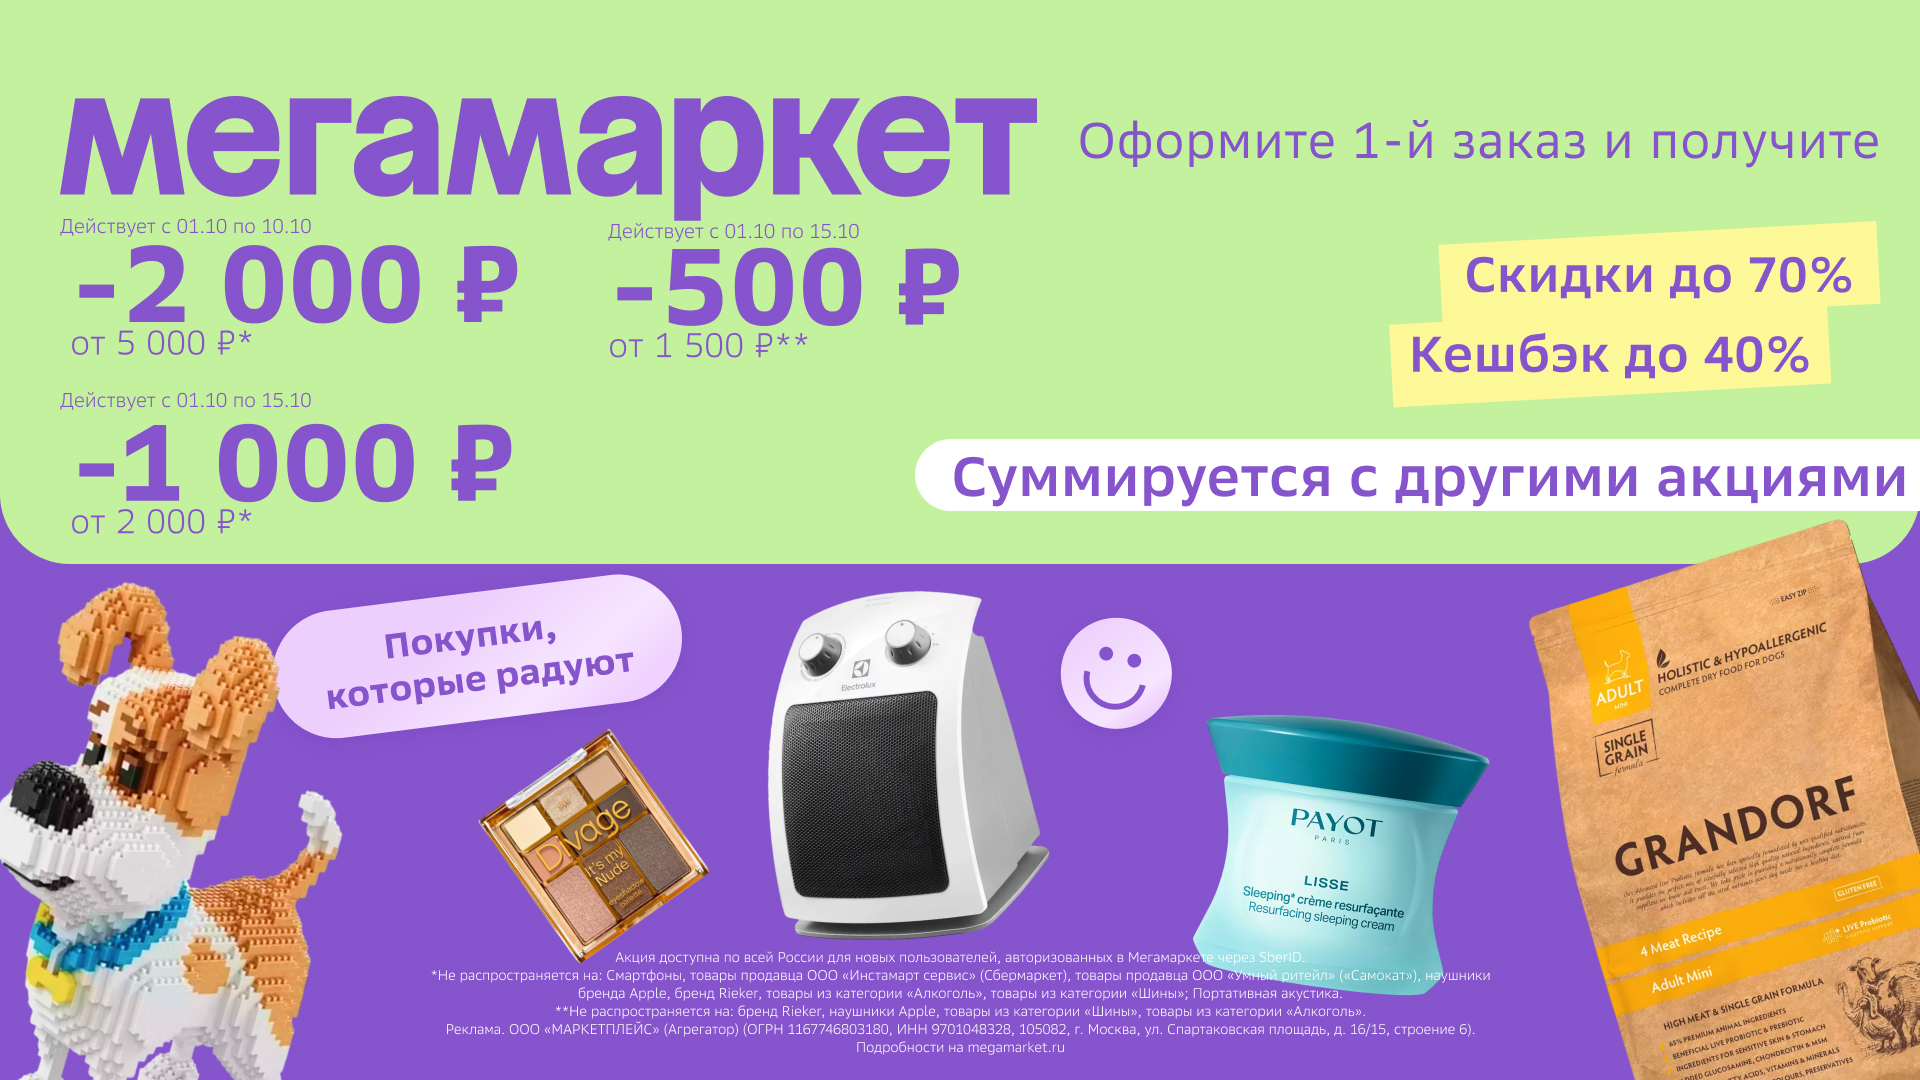 Промокод Мегамаркет – скидка  2000 руб. от 5000 руб. для новых пользователей!